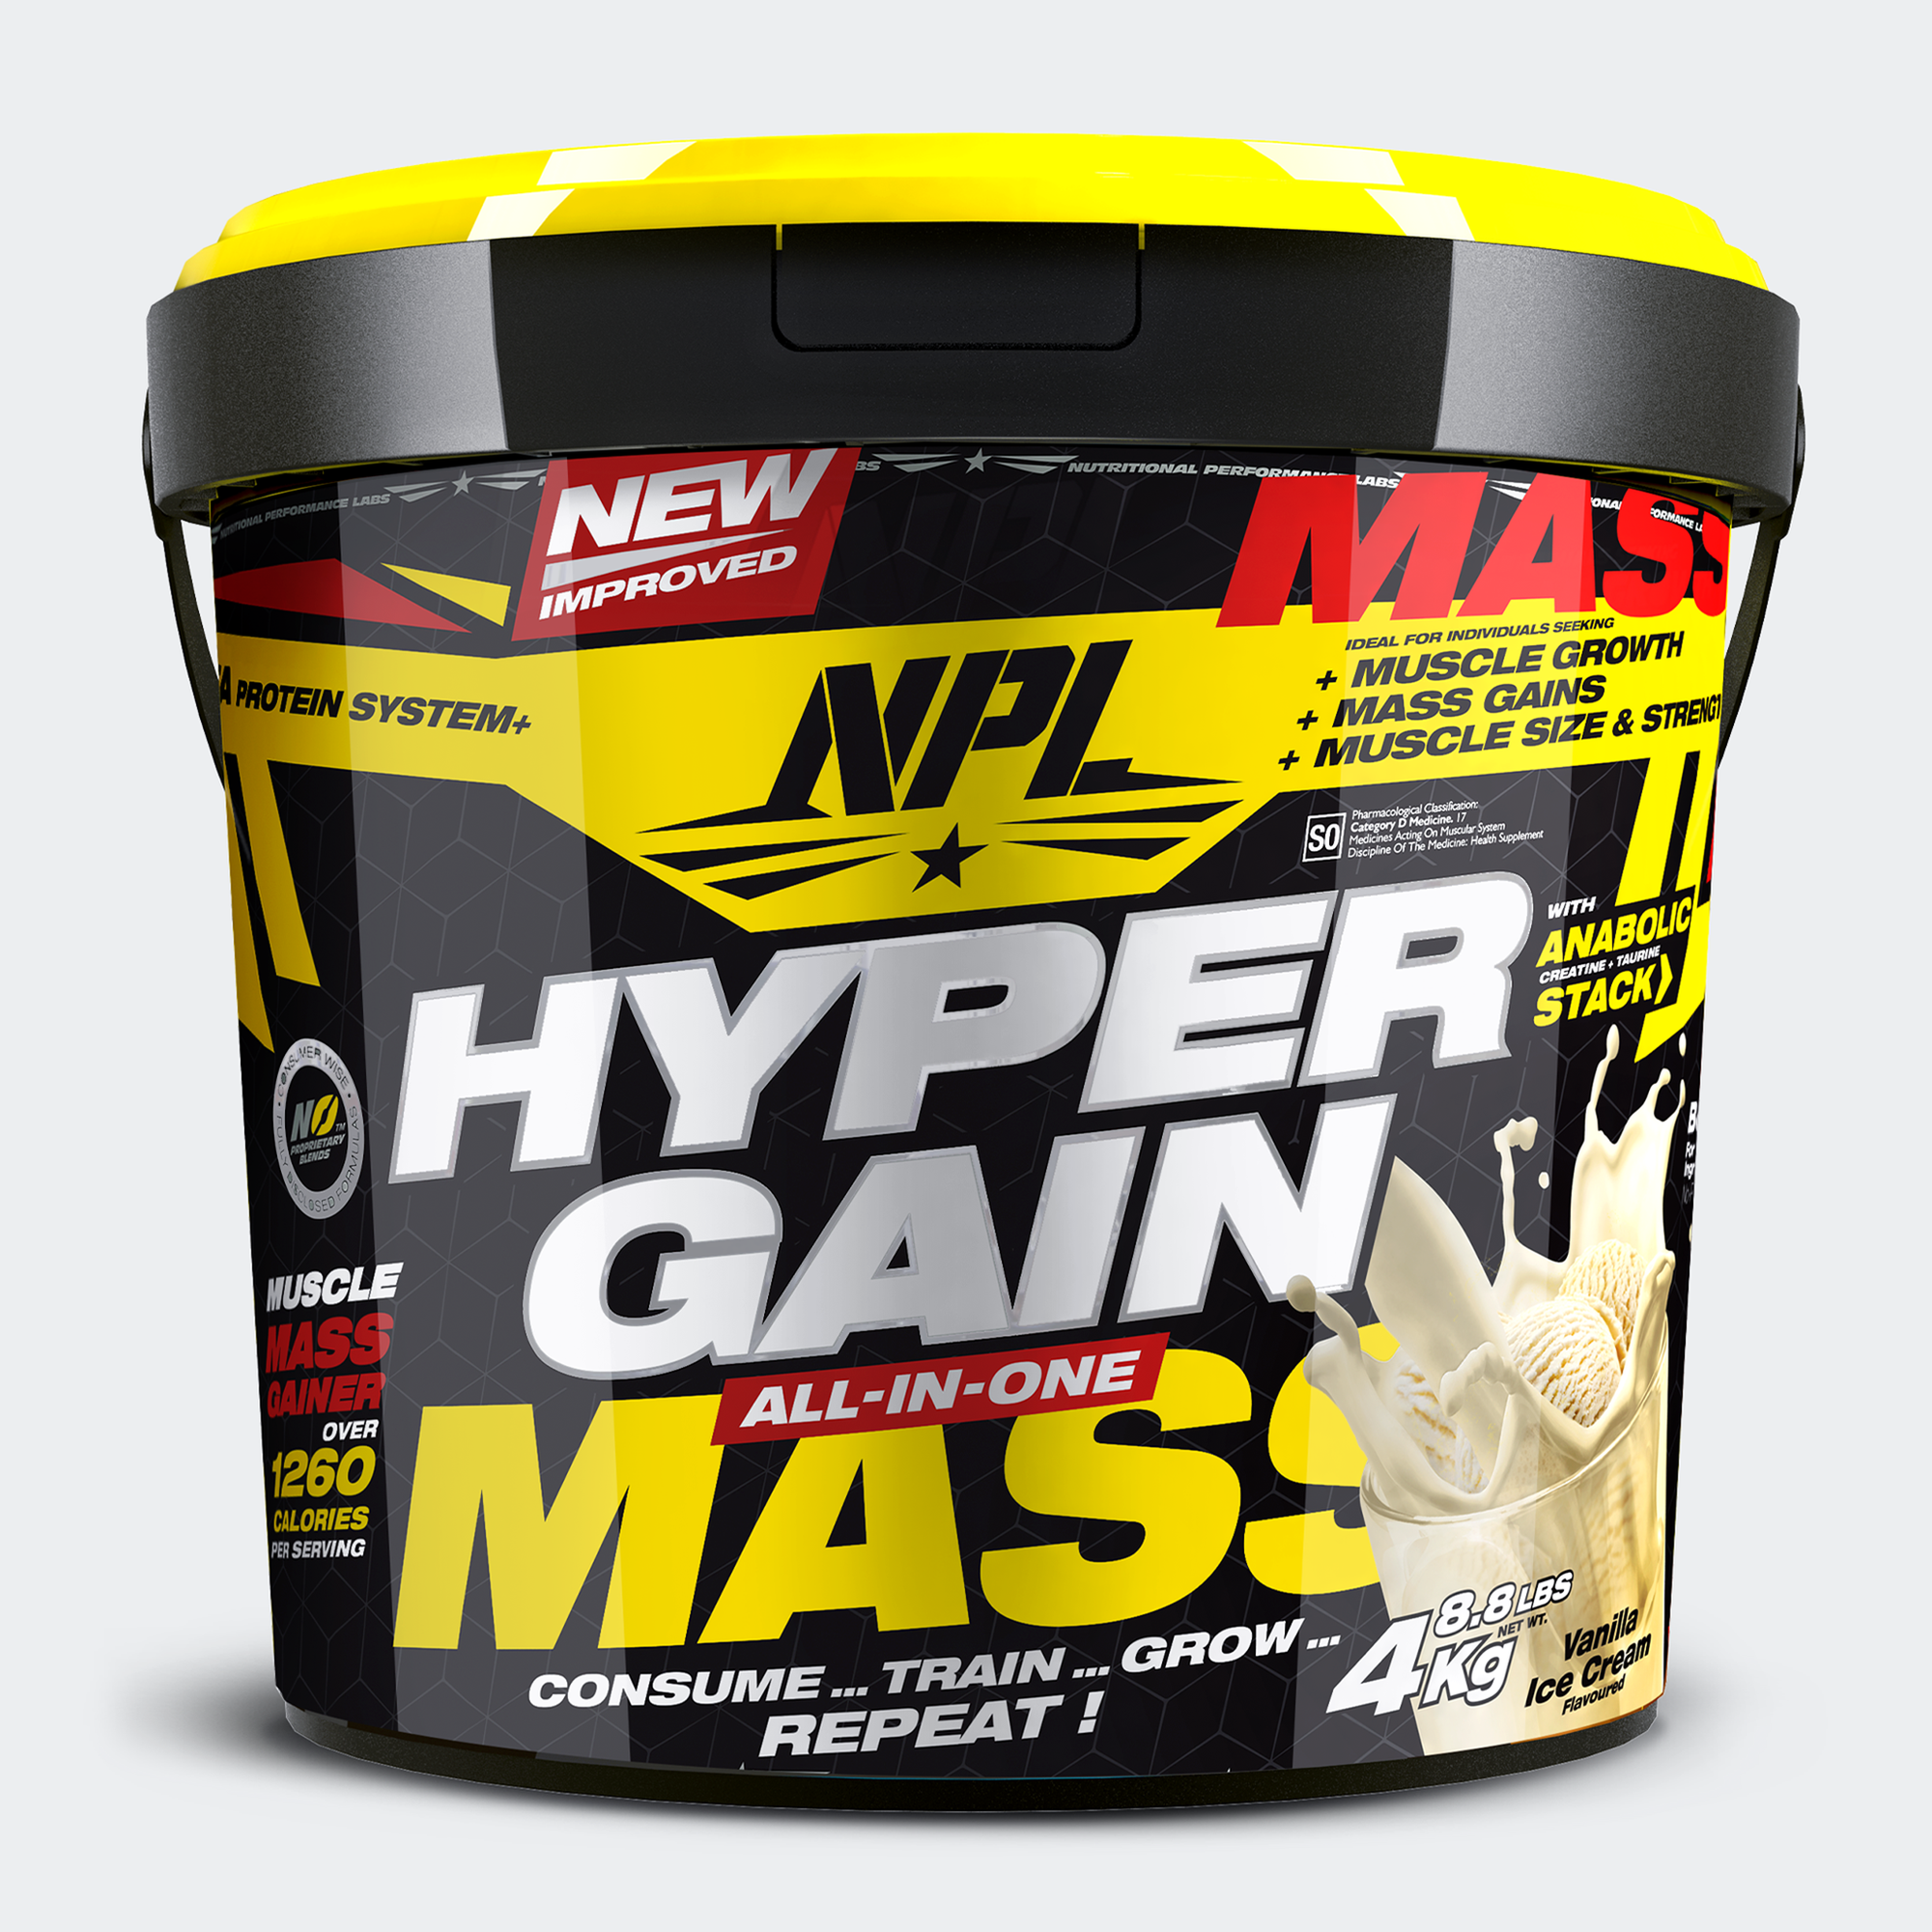 NPL Hyper Gain Mass: Unleash Heavy-Duty Muscle Growth